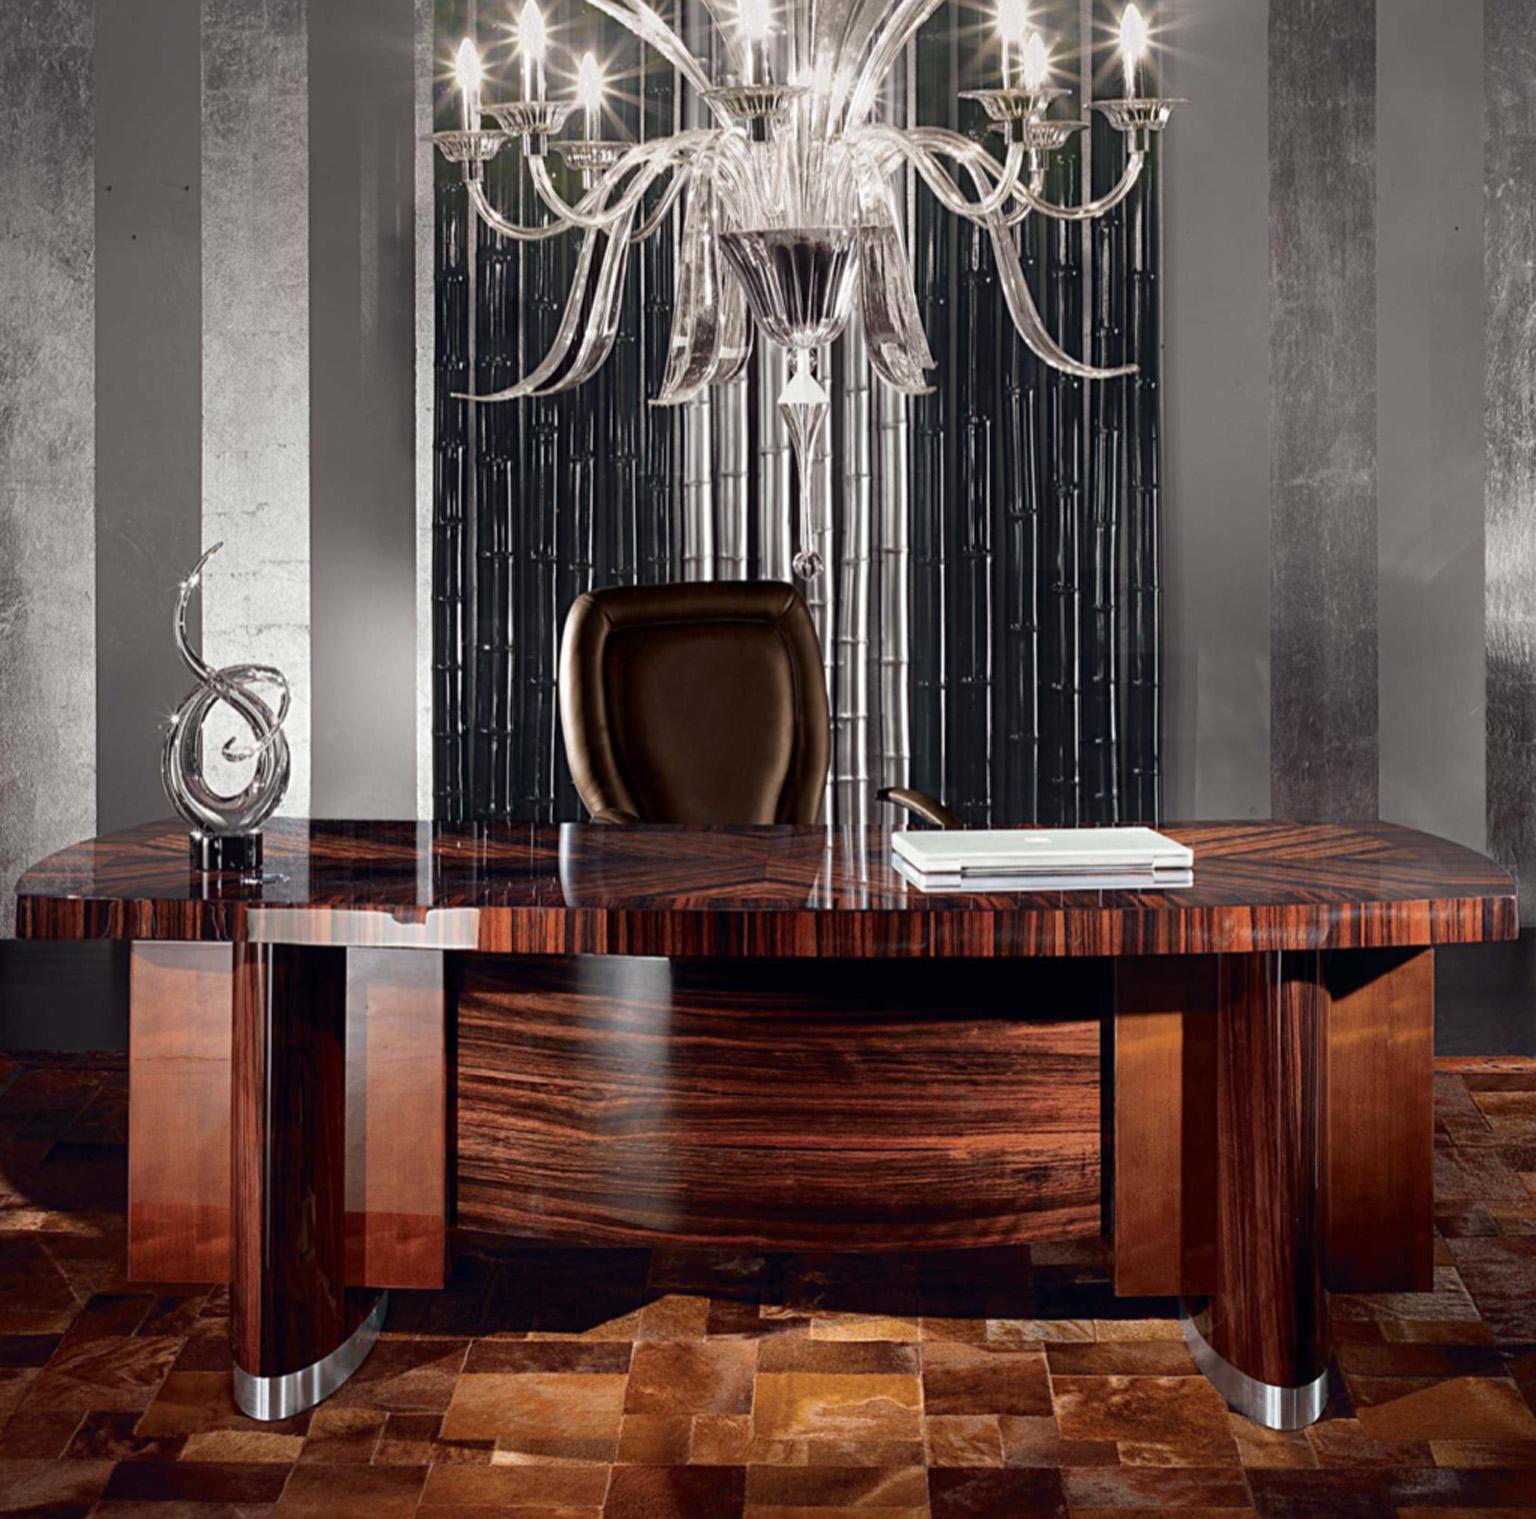 Gönnen Sie sich den Inbegriff von Luxus mit diesem exquisiten Schreibtisch. Die Ebenholzplatte aus Makassar, die mit einem Zebrafurnier aus hochglänzendem Polyester verziert ist, strahlt Opulenz aus. Die mit Samt gefütterten Schubladen bieten viel